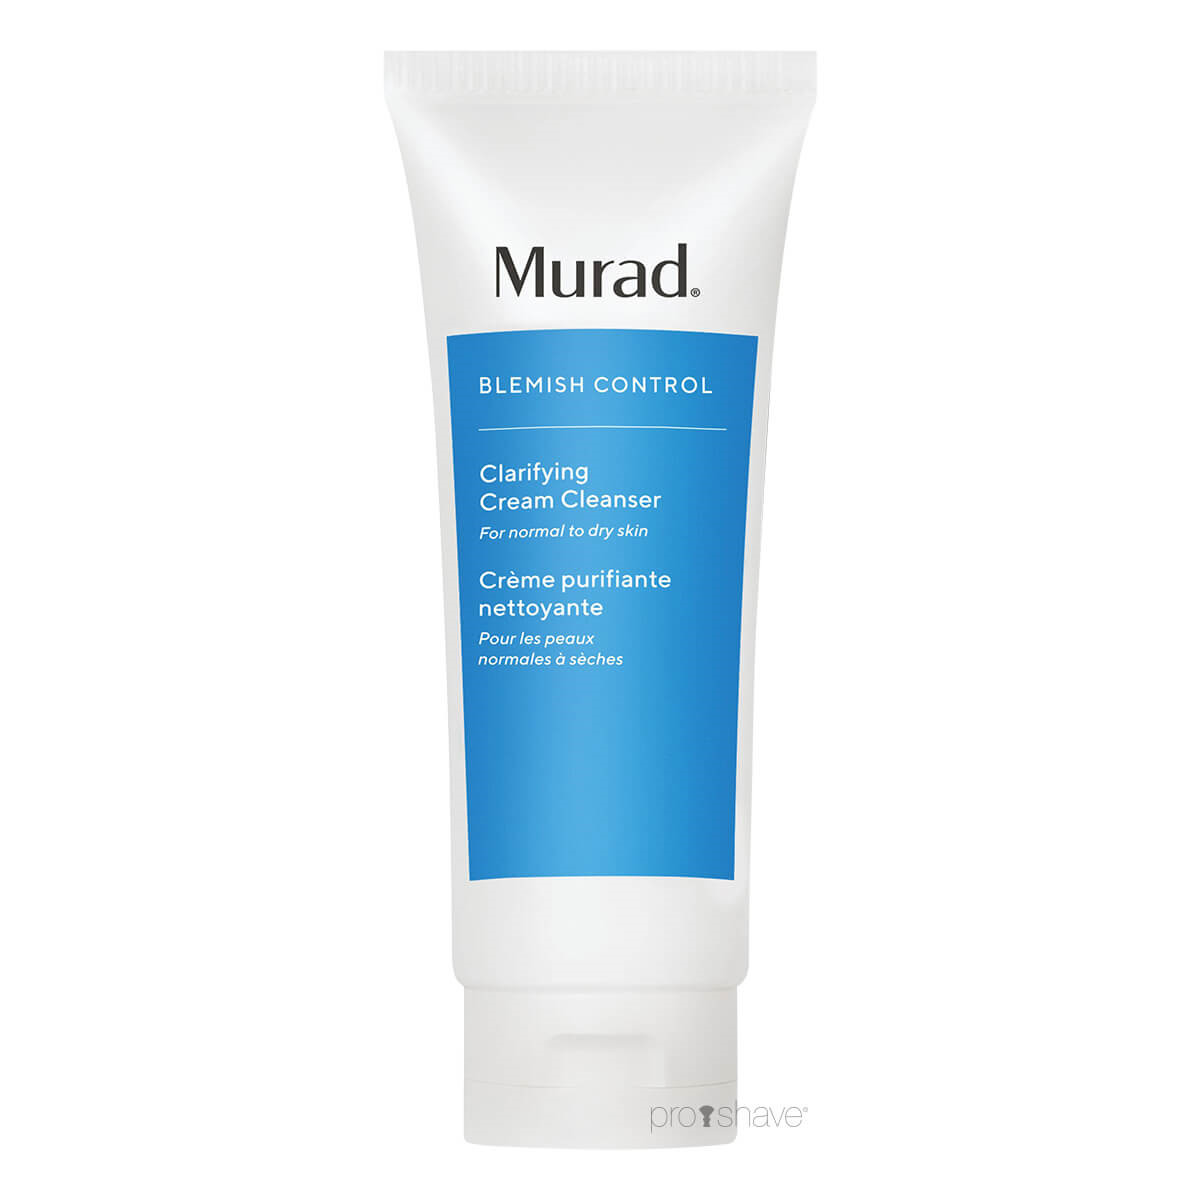 Se Murad Clarifying Cream Cleanser, Blemish Control, 200 ml. hos Proshave